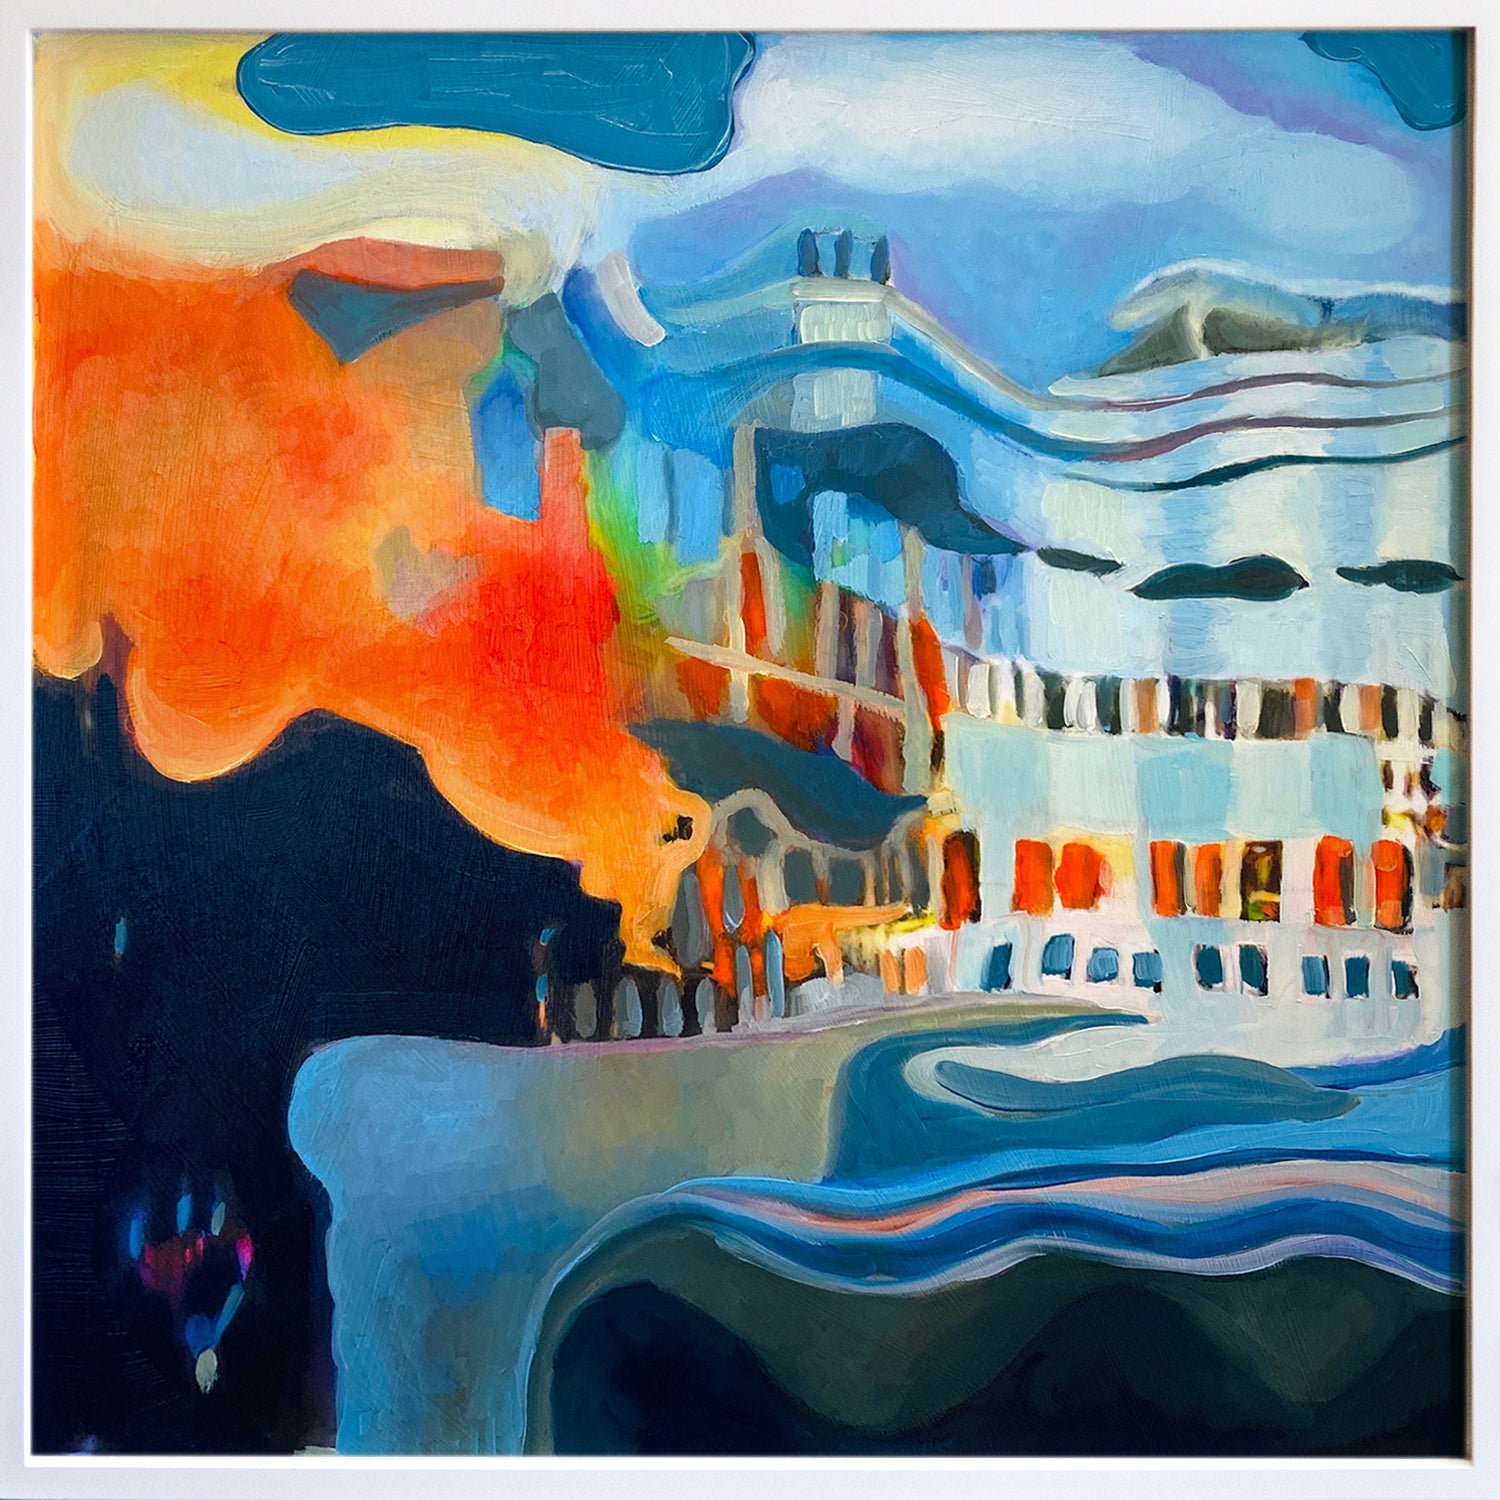 Anne Spalter, "Ship Fire Landscape" SOLD